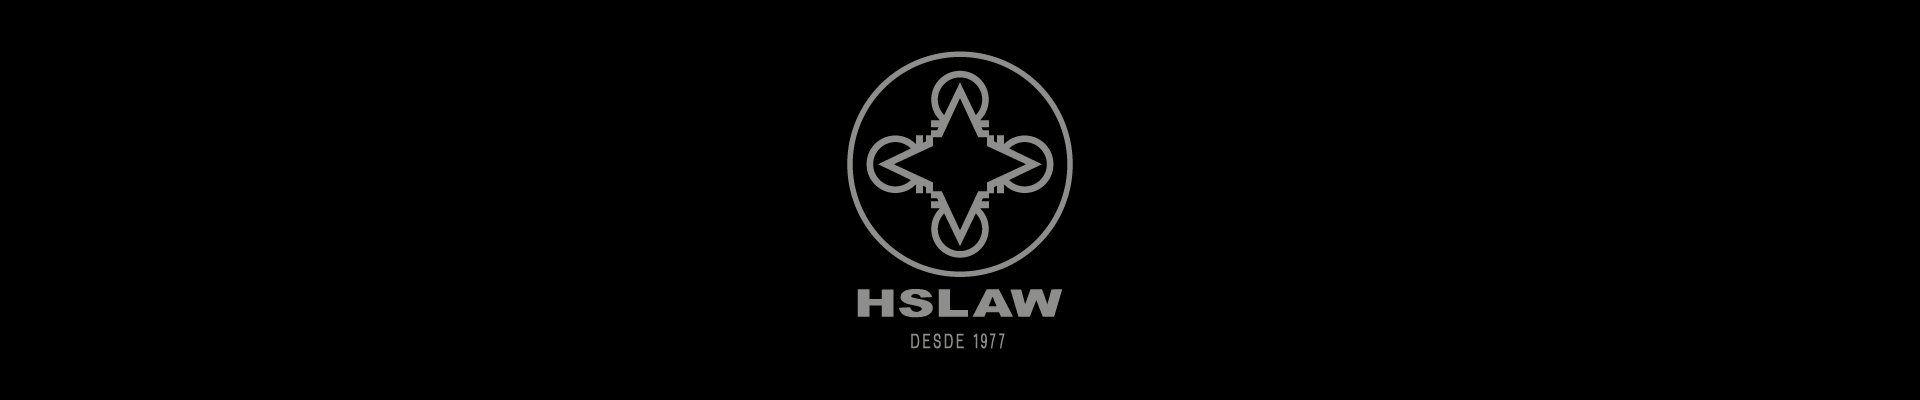 HSLAW